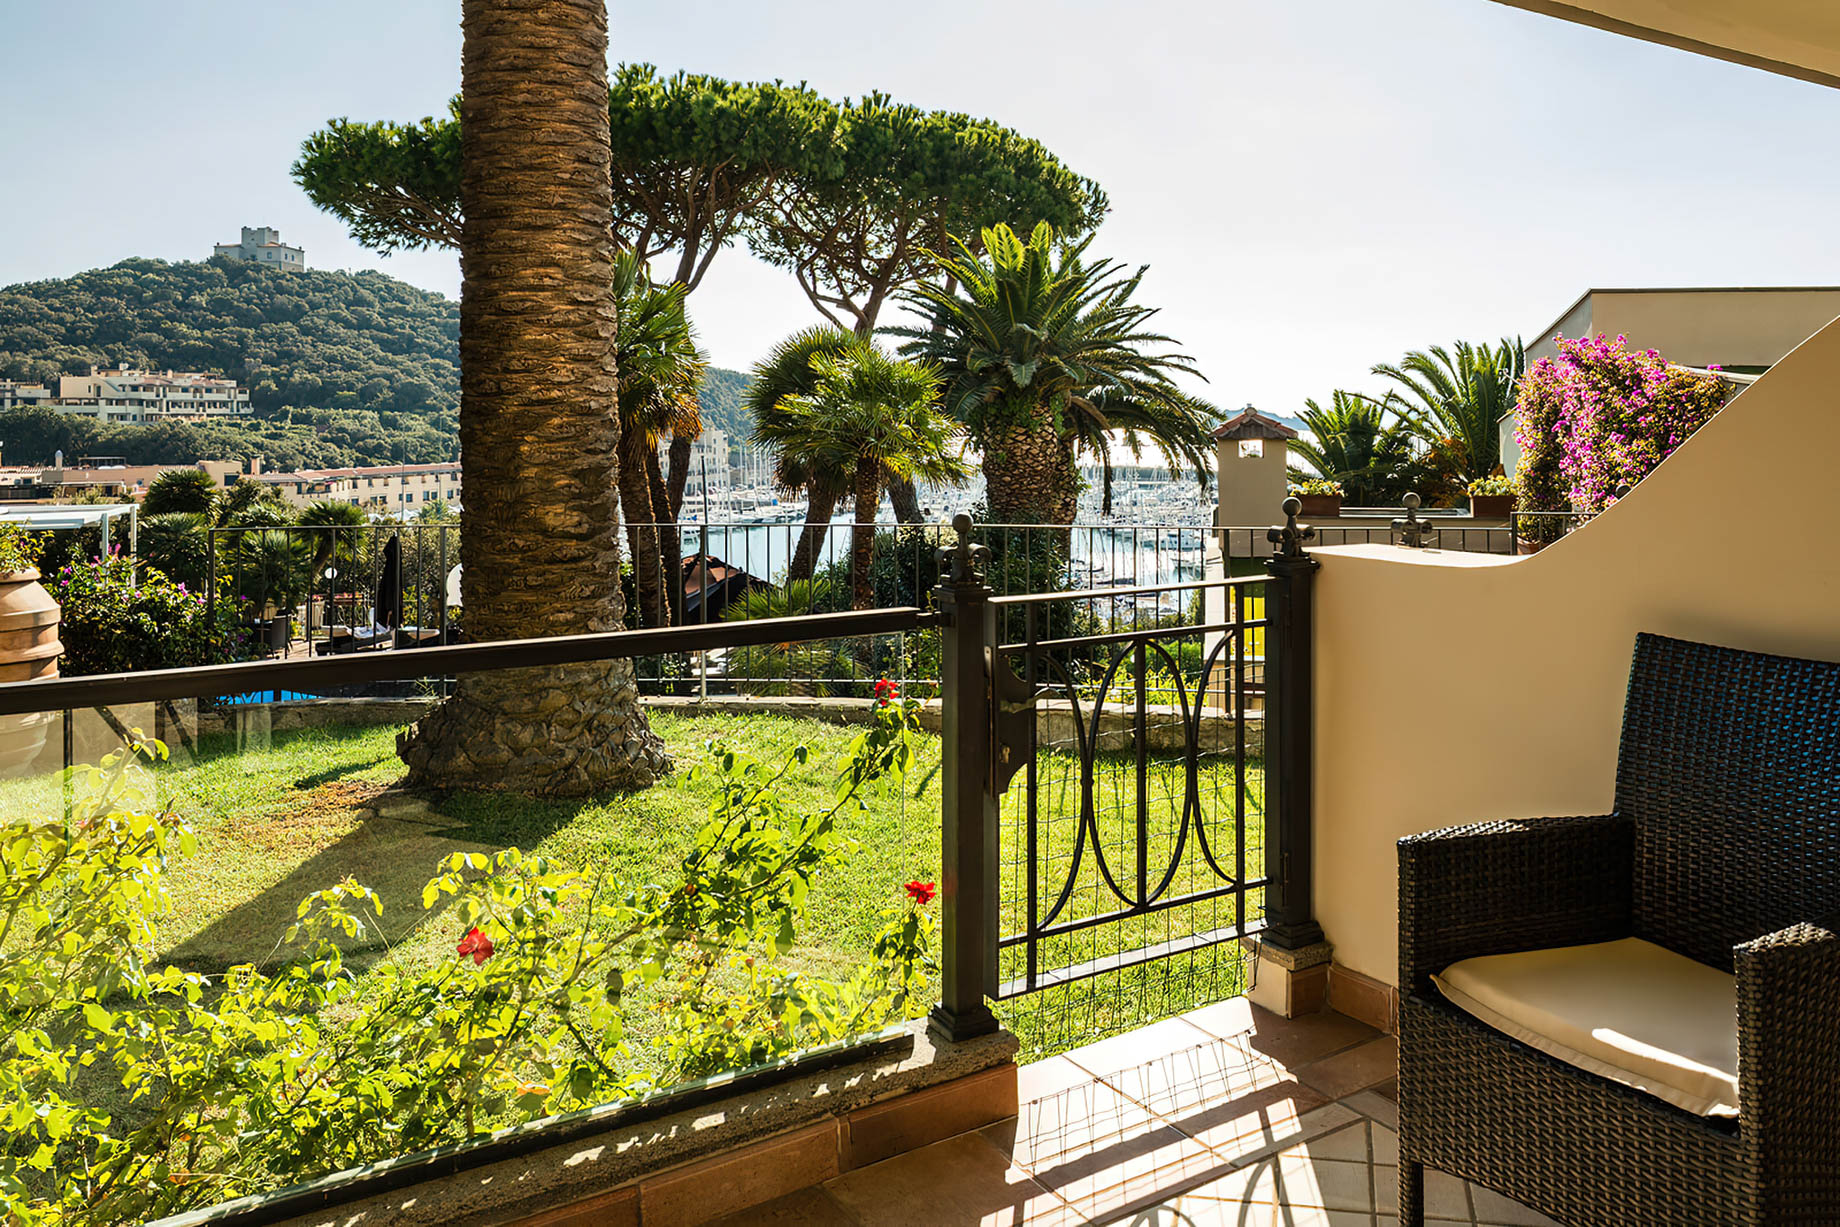 Baglioni Resort Cala del Porto Tuscany – Punta Ala, Italy – Deluxe Sea View Room Terrace